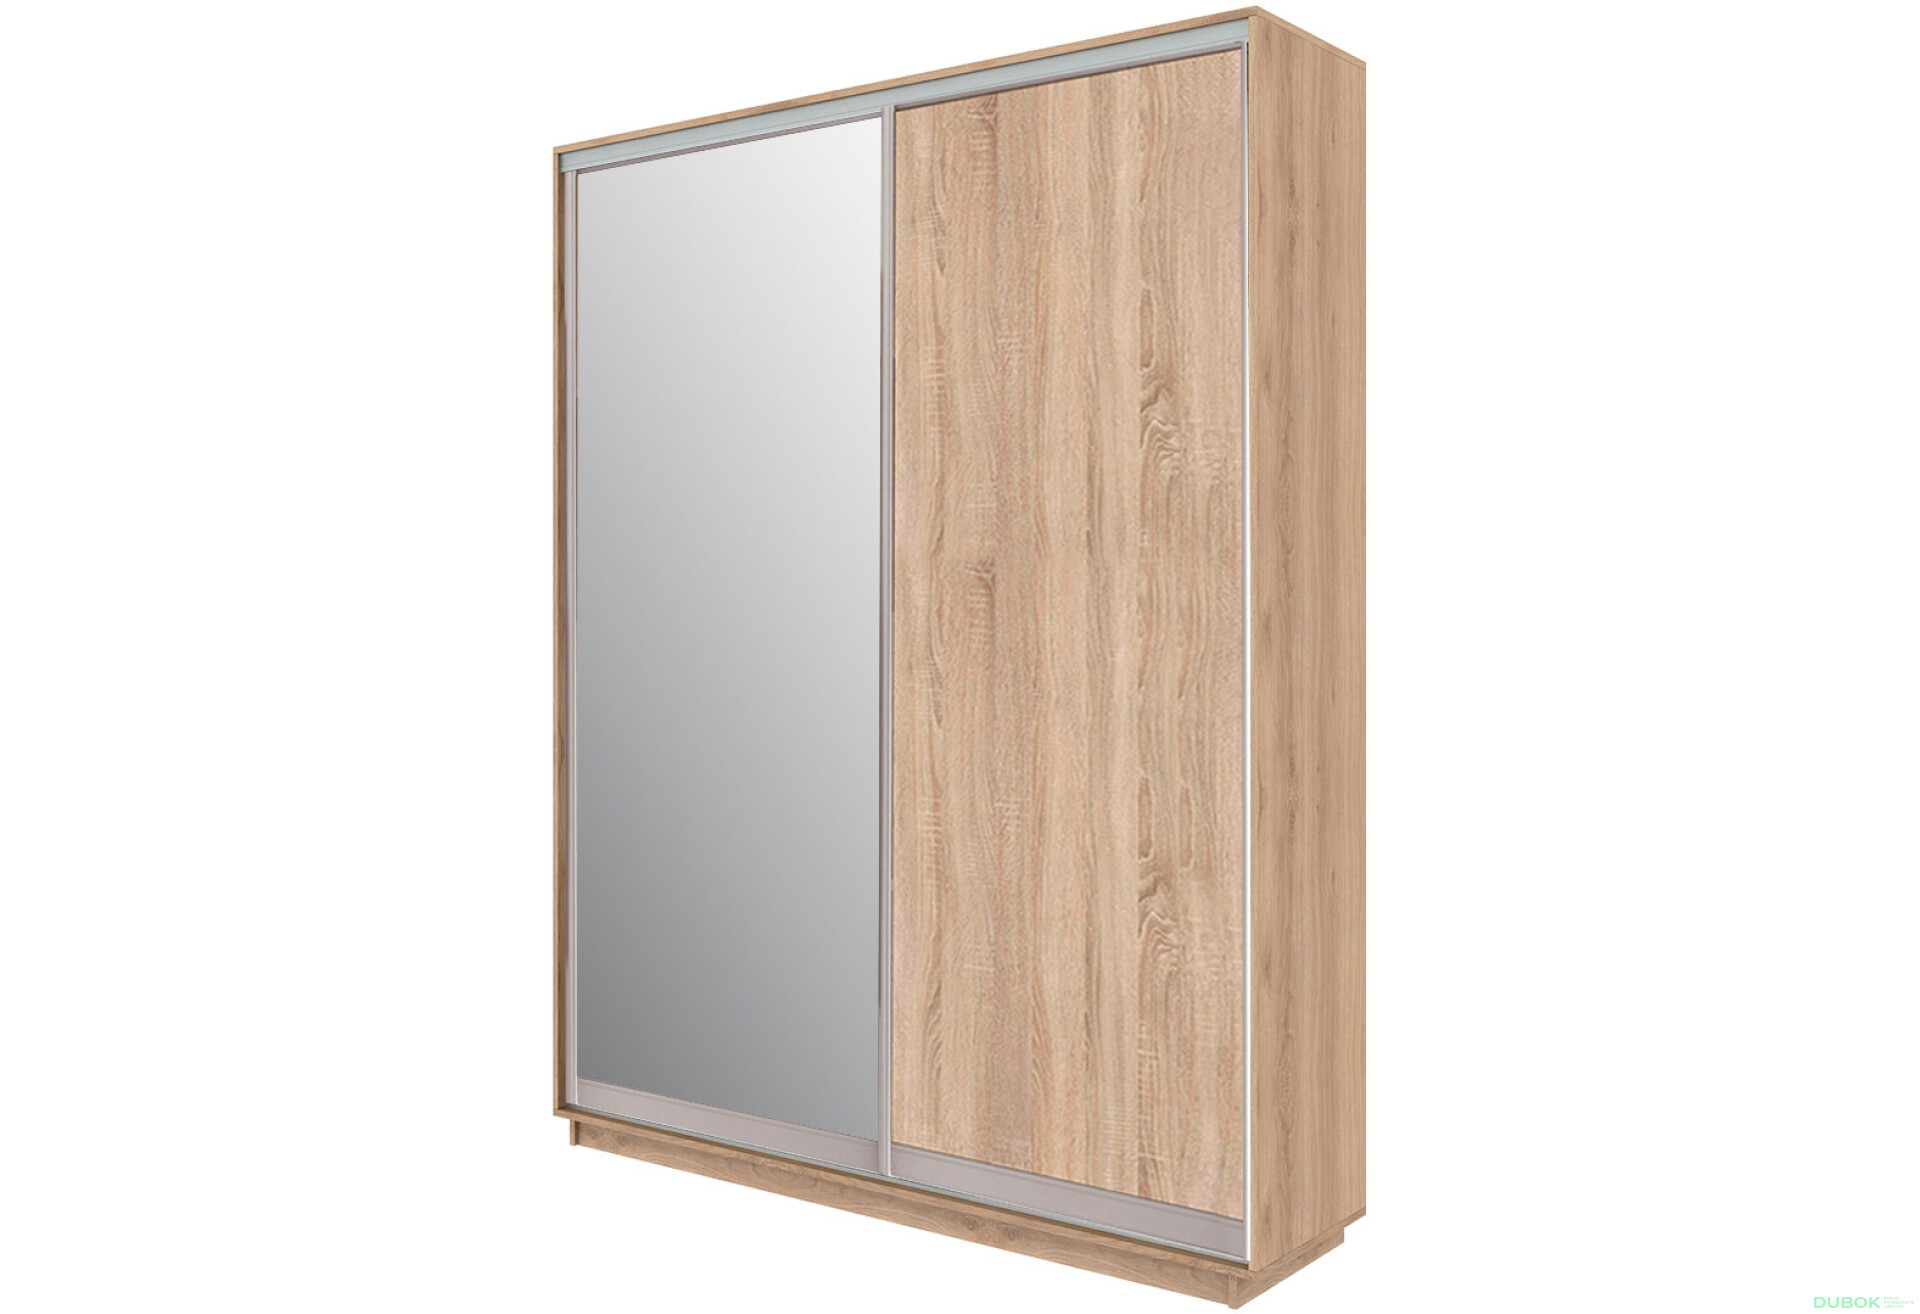 Fotografie 1 - Skříň 180x240x60 dub sonoma, 1 dřevotříska+1 zrcadlo, stříbrný profil